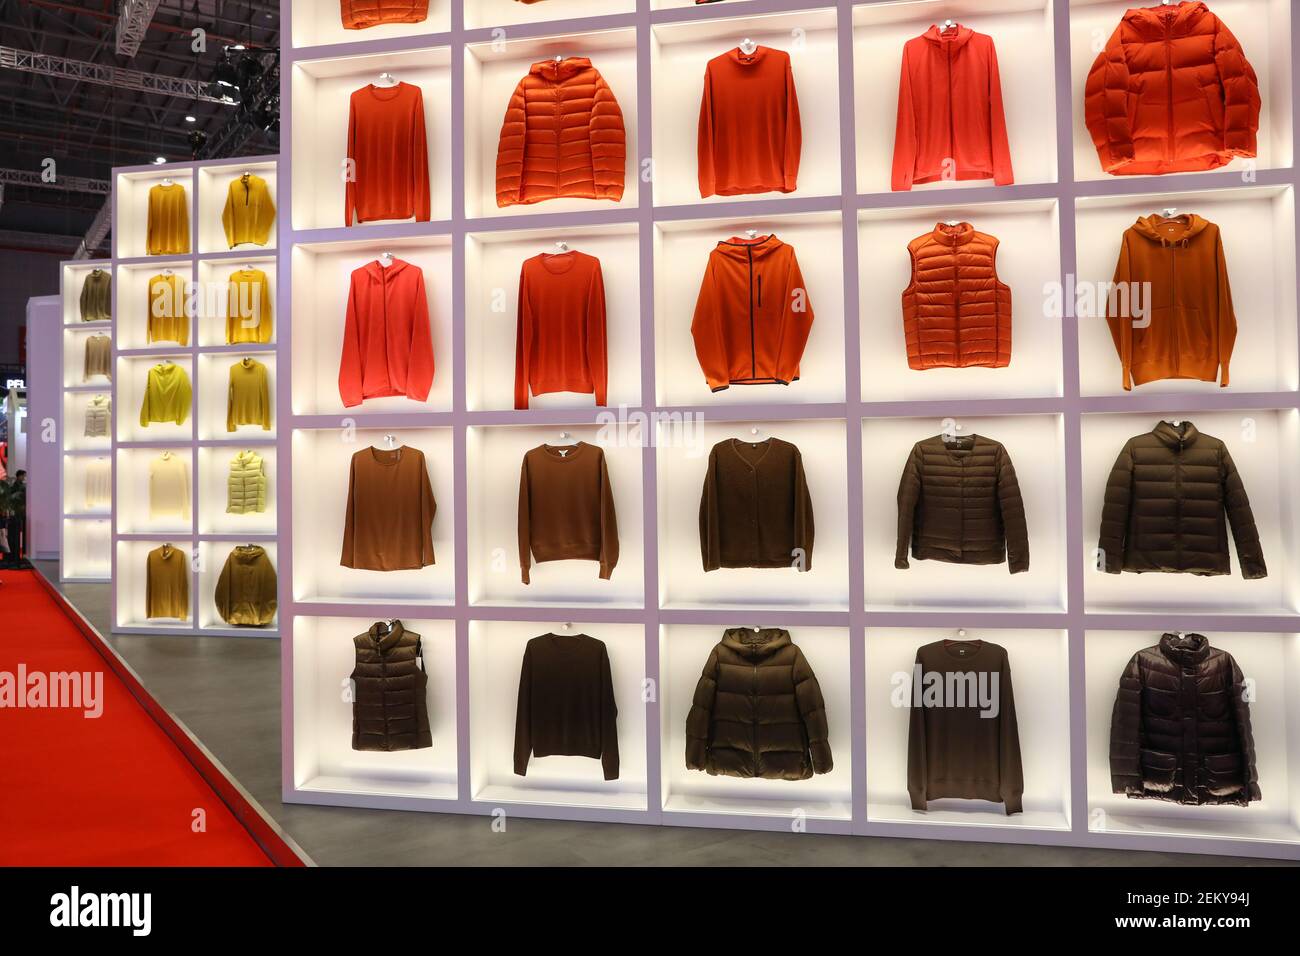 La Marca japonesa de ropa Uniqlo establece un área de exposición de 1,500  metros cuadrados llamada 'Museo del mañana' en la China International  Import Expo, 3 chaquetas gigantes suspendidas en el aire